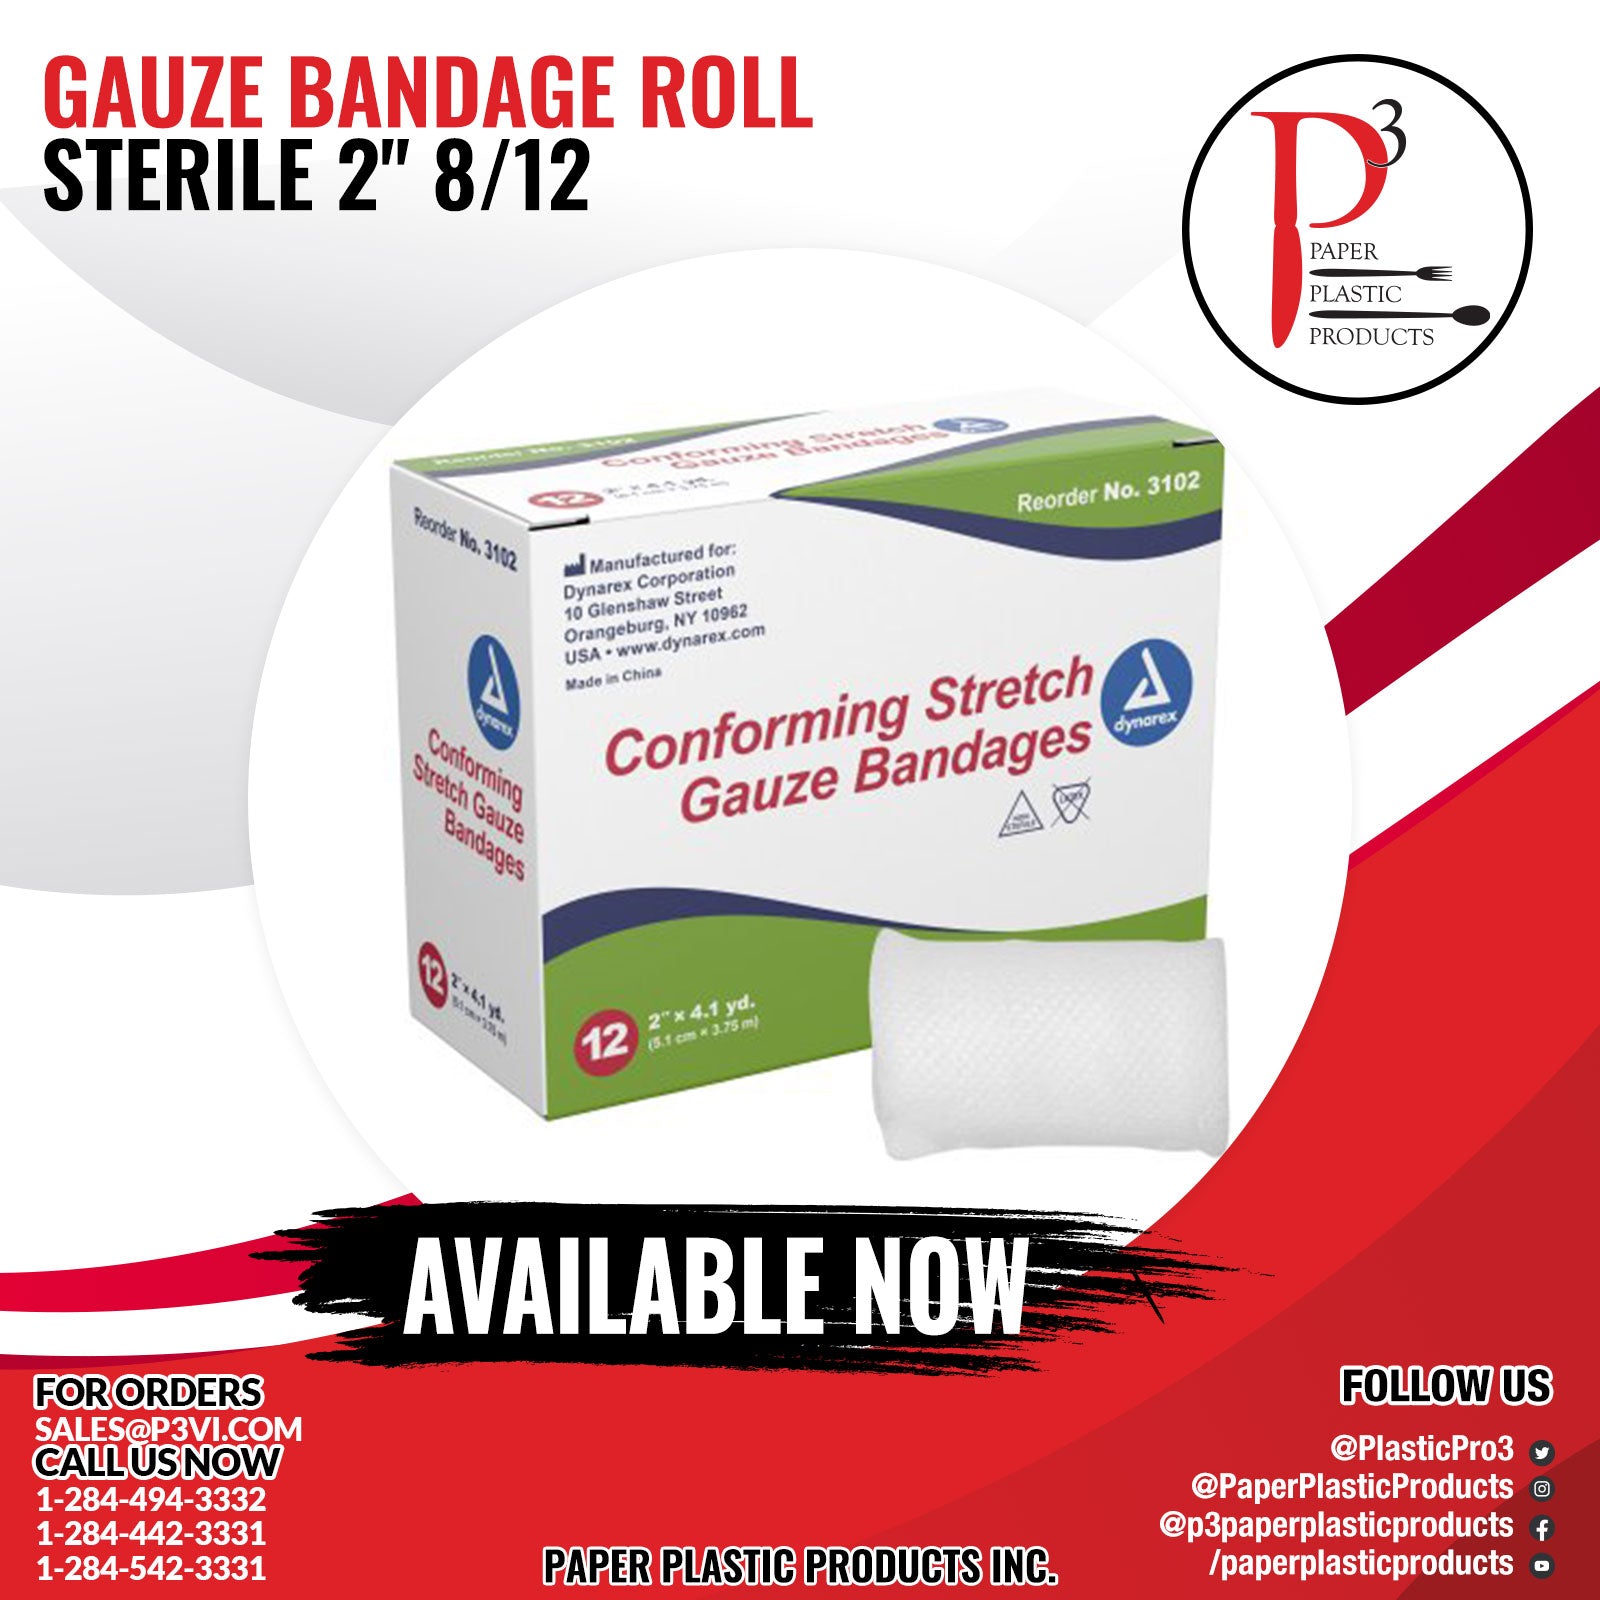 Gauze Bandage Roll Sterile 2" 8/12